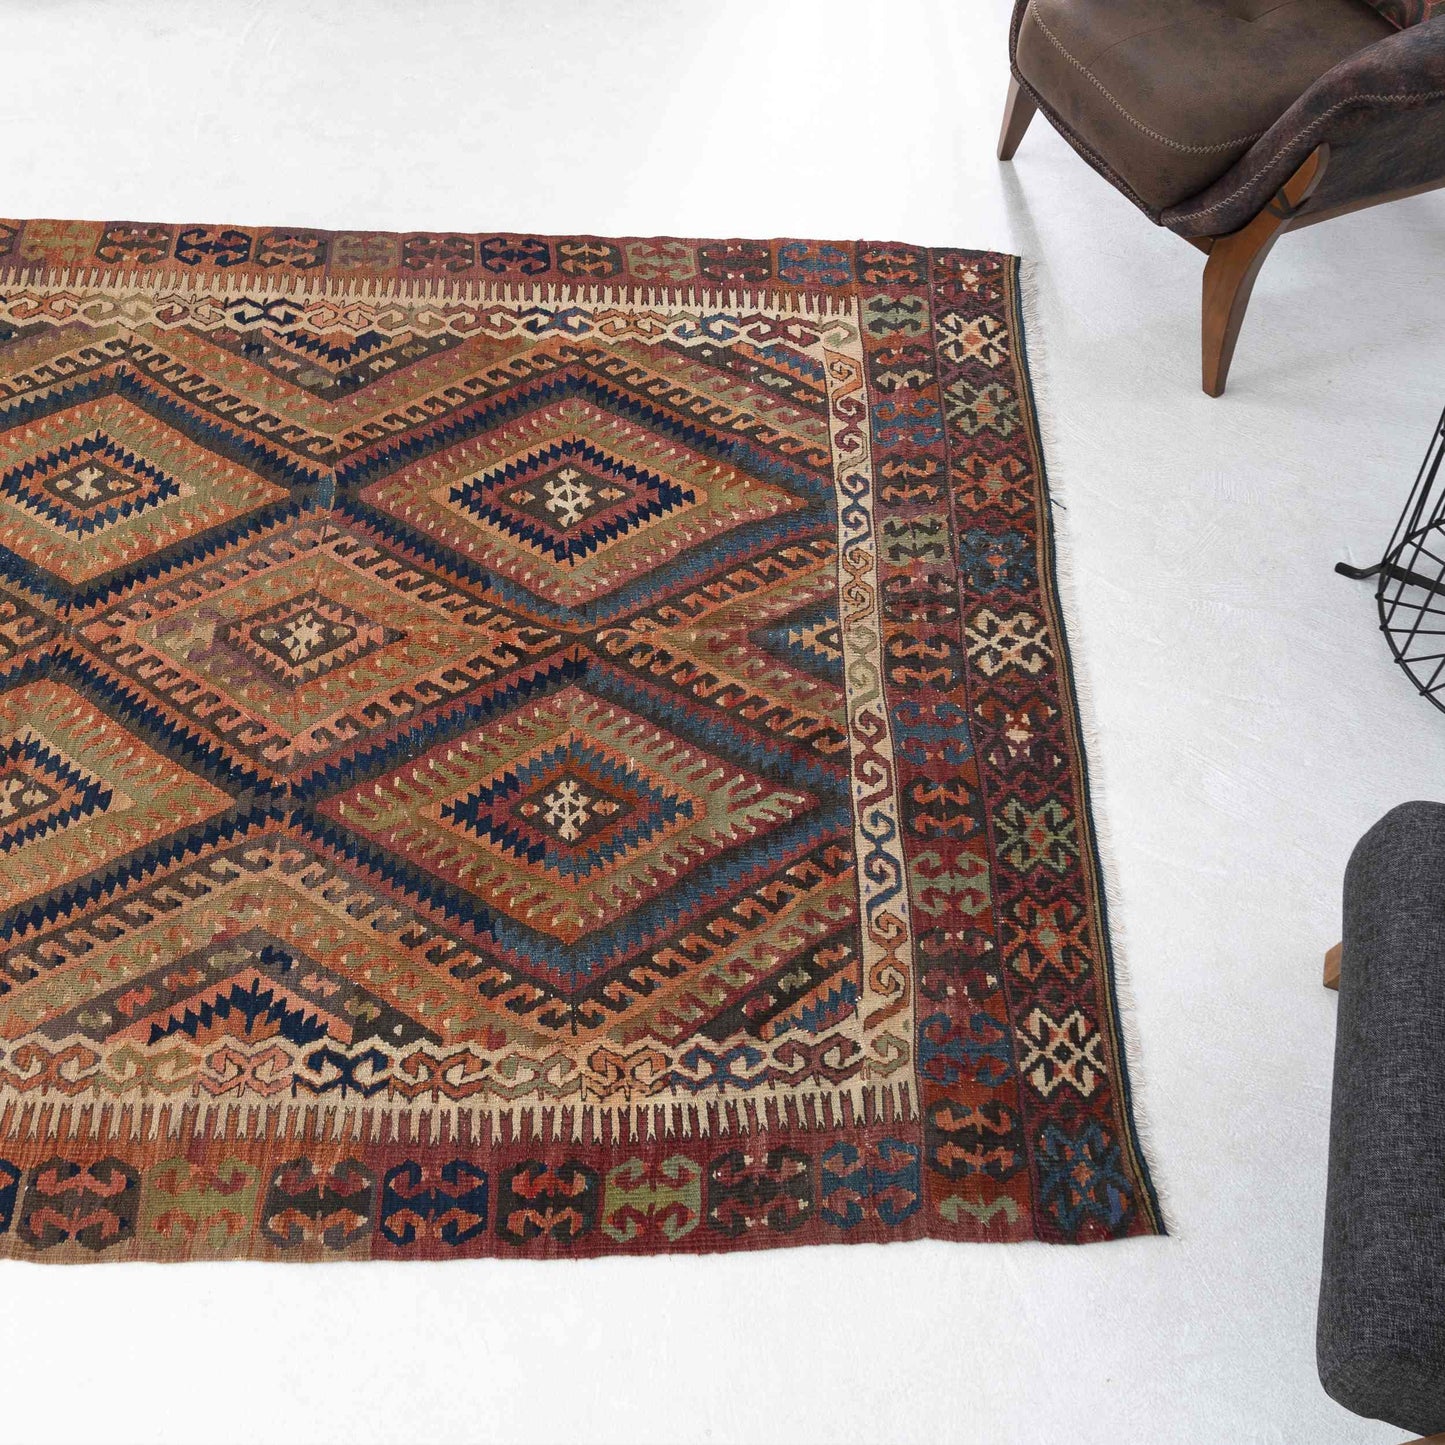 Oriental Kilim Fethiye Handmade Wool On Wool 175 x 183 Cm - 5' 9'' x 6' 1'' Orange C011 ER12